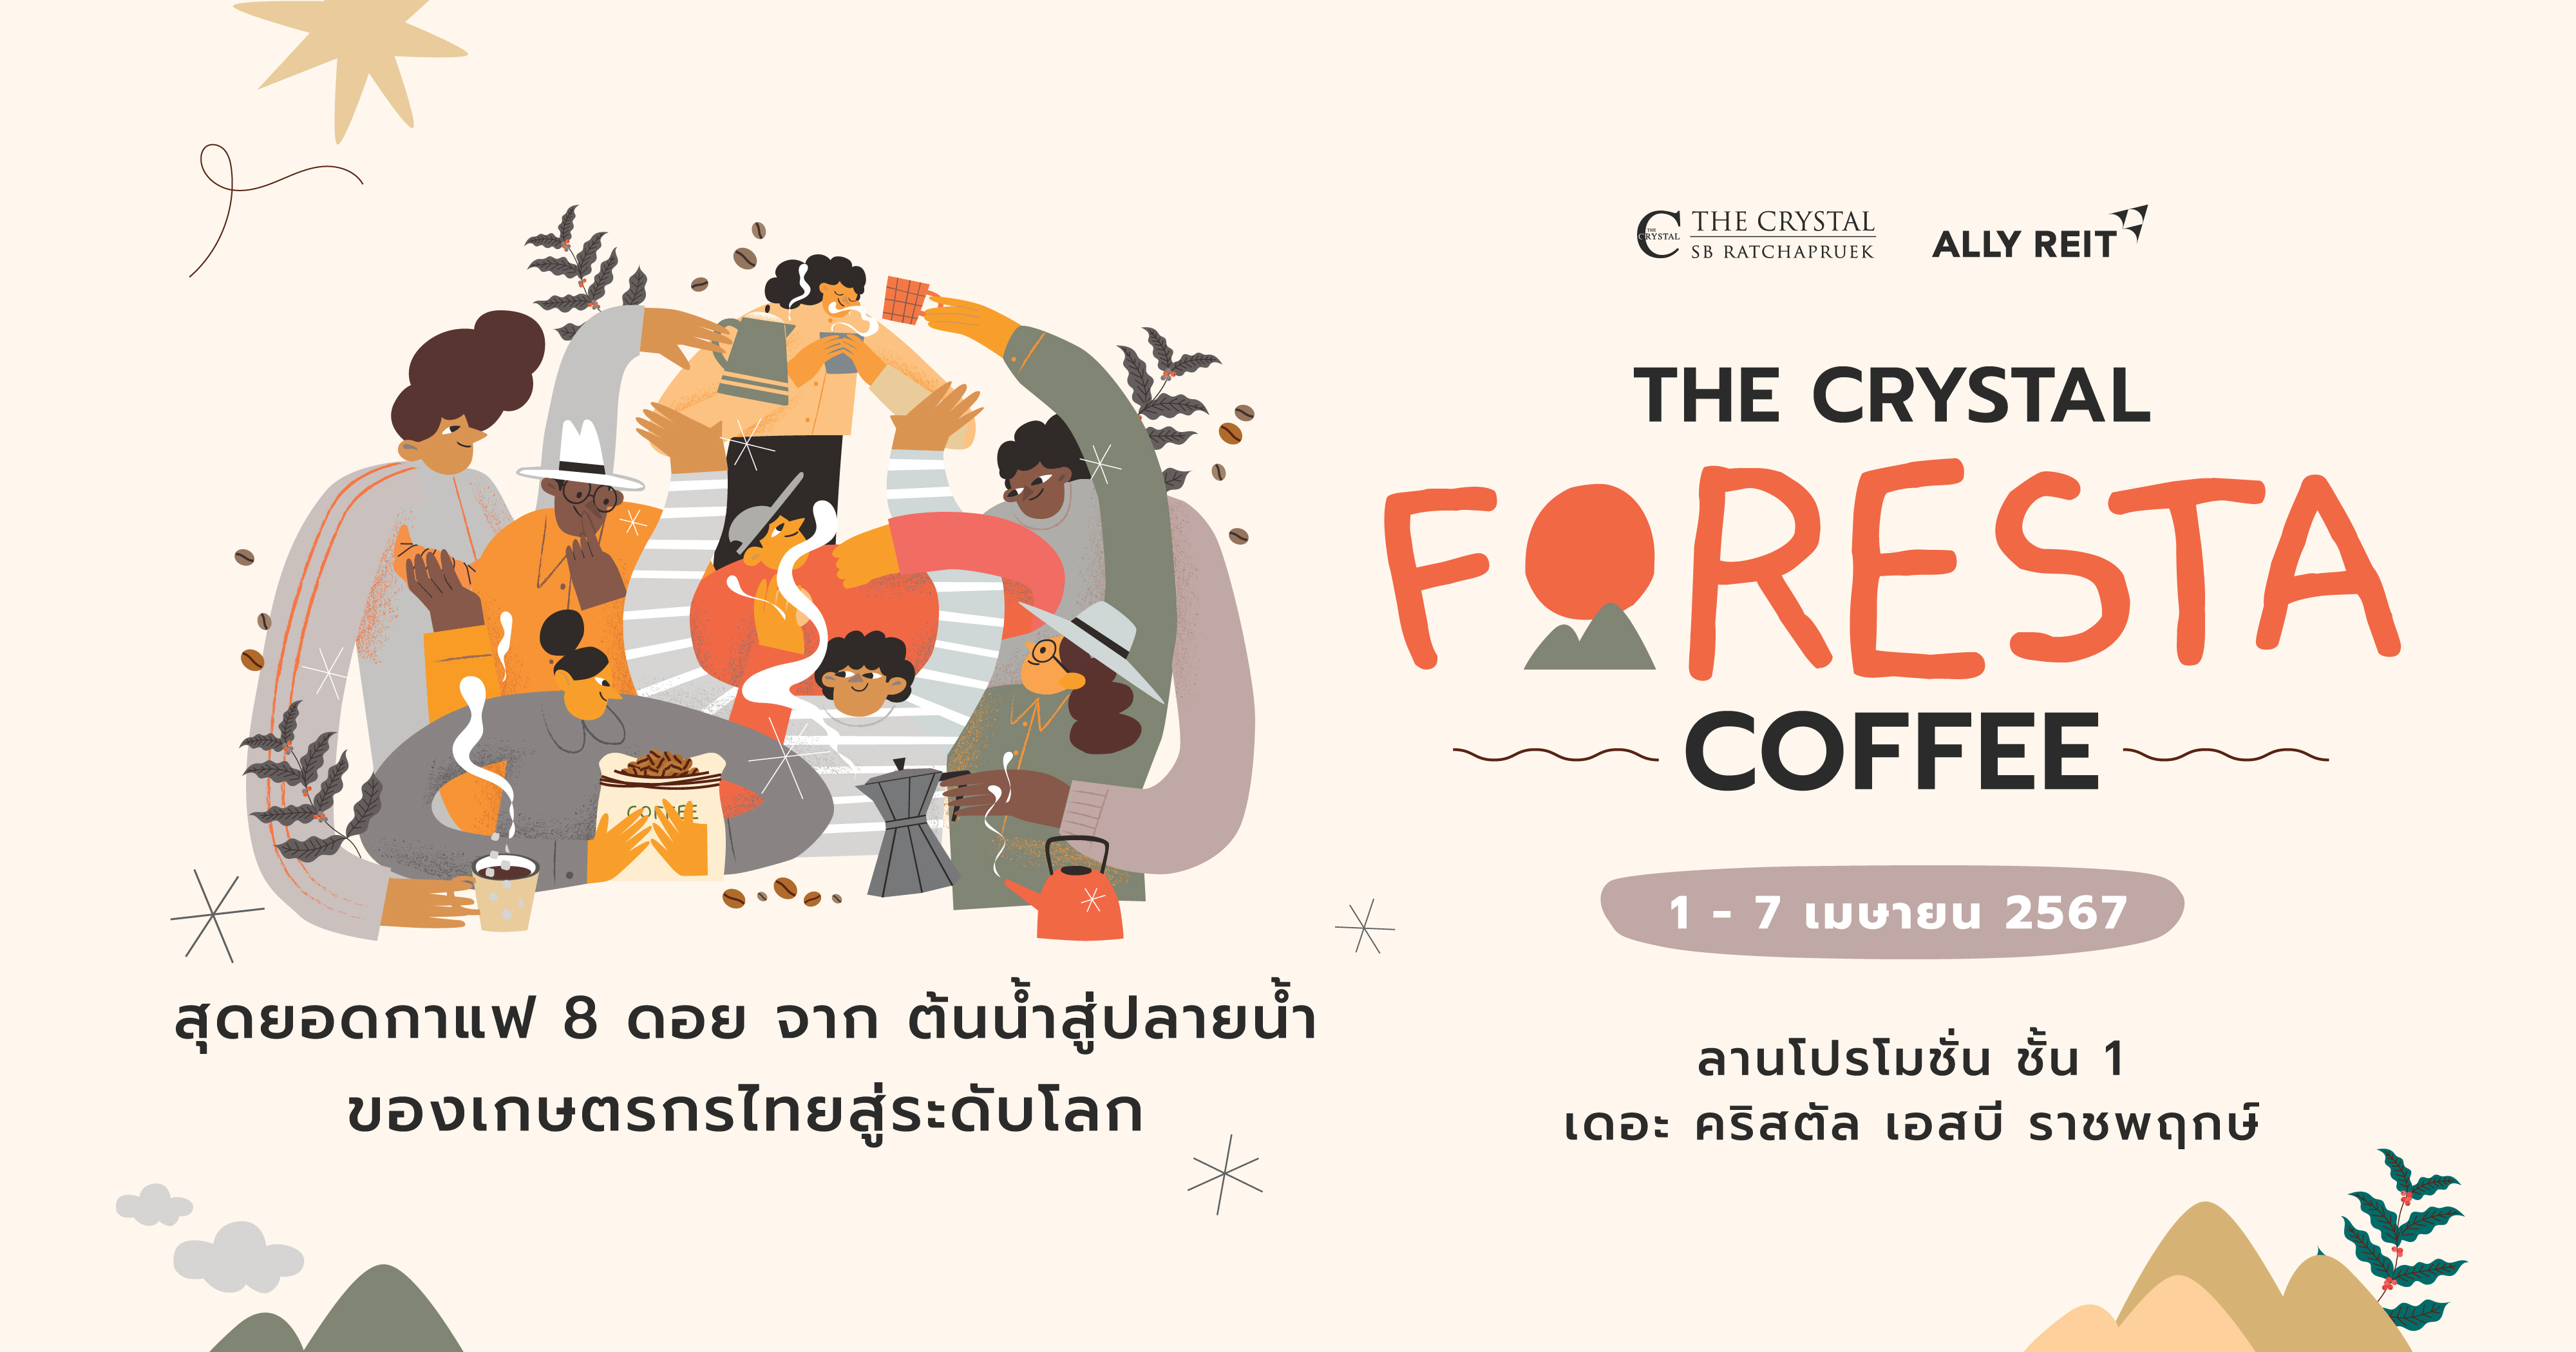 ตามกลิ่นกาแฟ มาแชร์ความอร่อย  ในงาน “The Foresta Coffee” ปลูกจากใจ สู่เมล็ดกาแฟไทย ที่หอมกรุ่นทั่วพื้นที่ คอกาแฟห้ามพลาด 1-7 เมษายน นี้ ที่ เดอะคริสตัล เอสบี ราชพฤกษ์